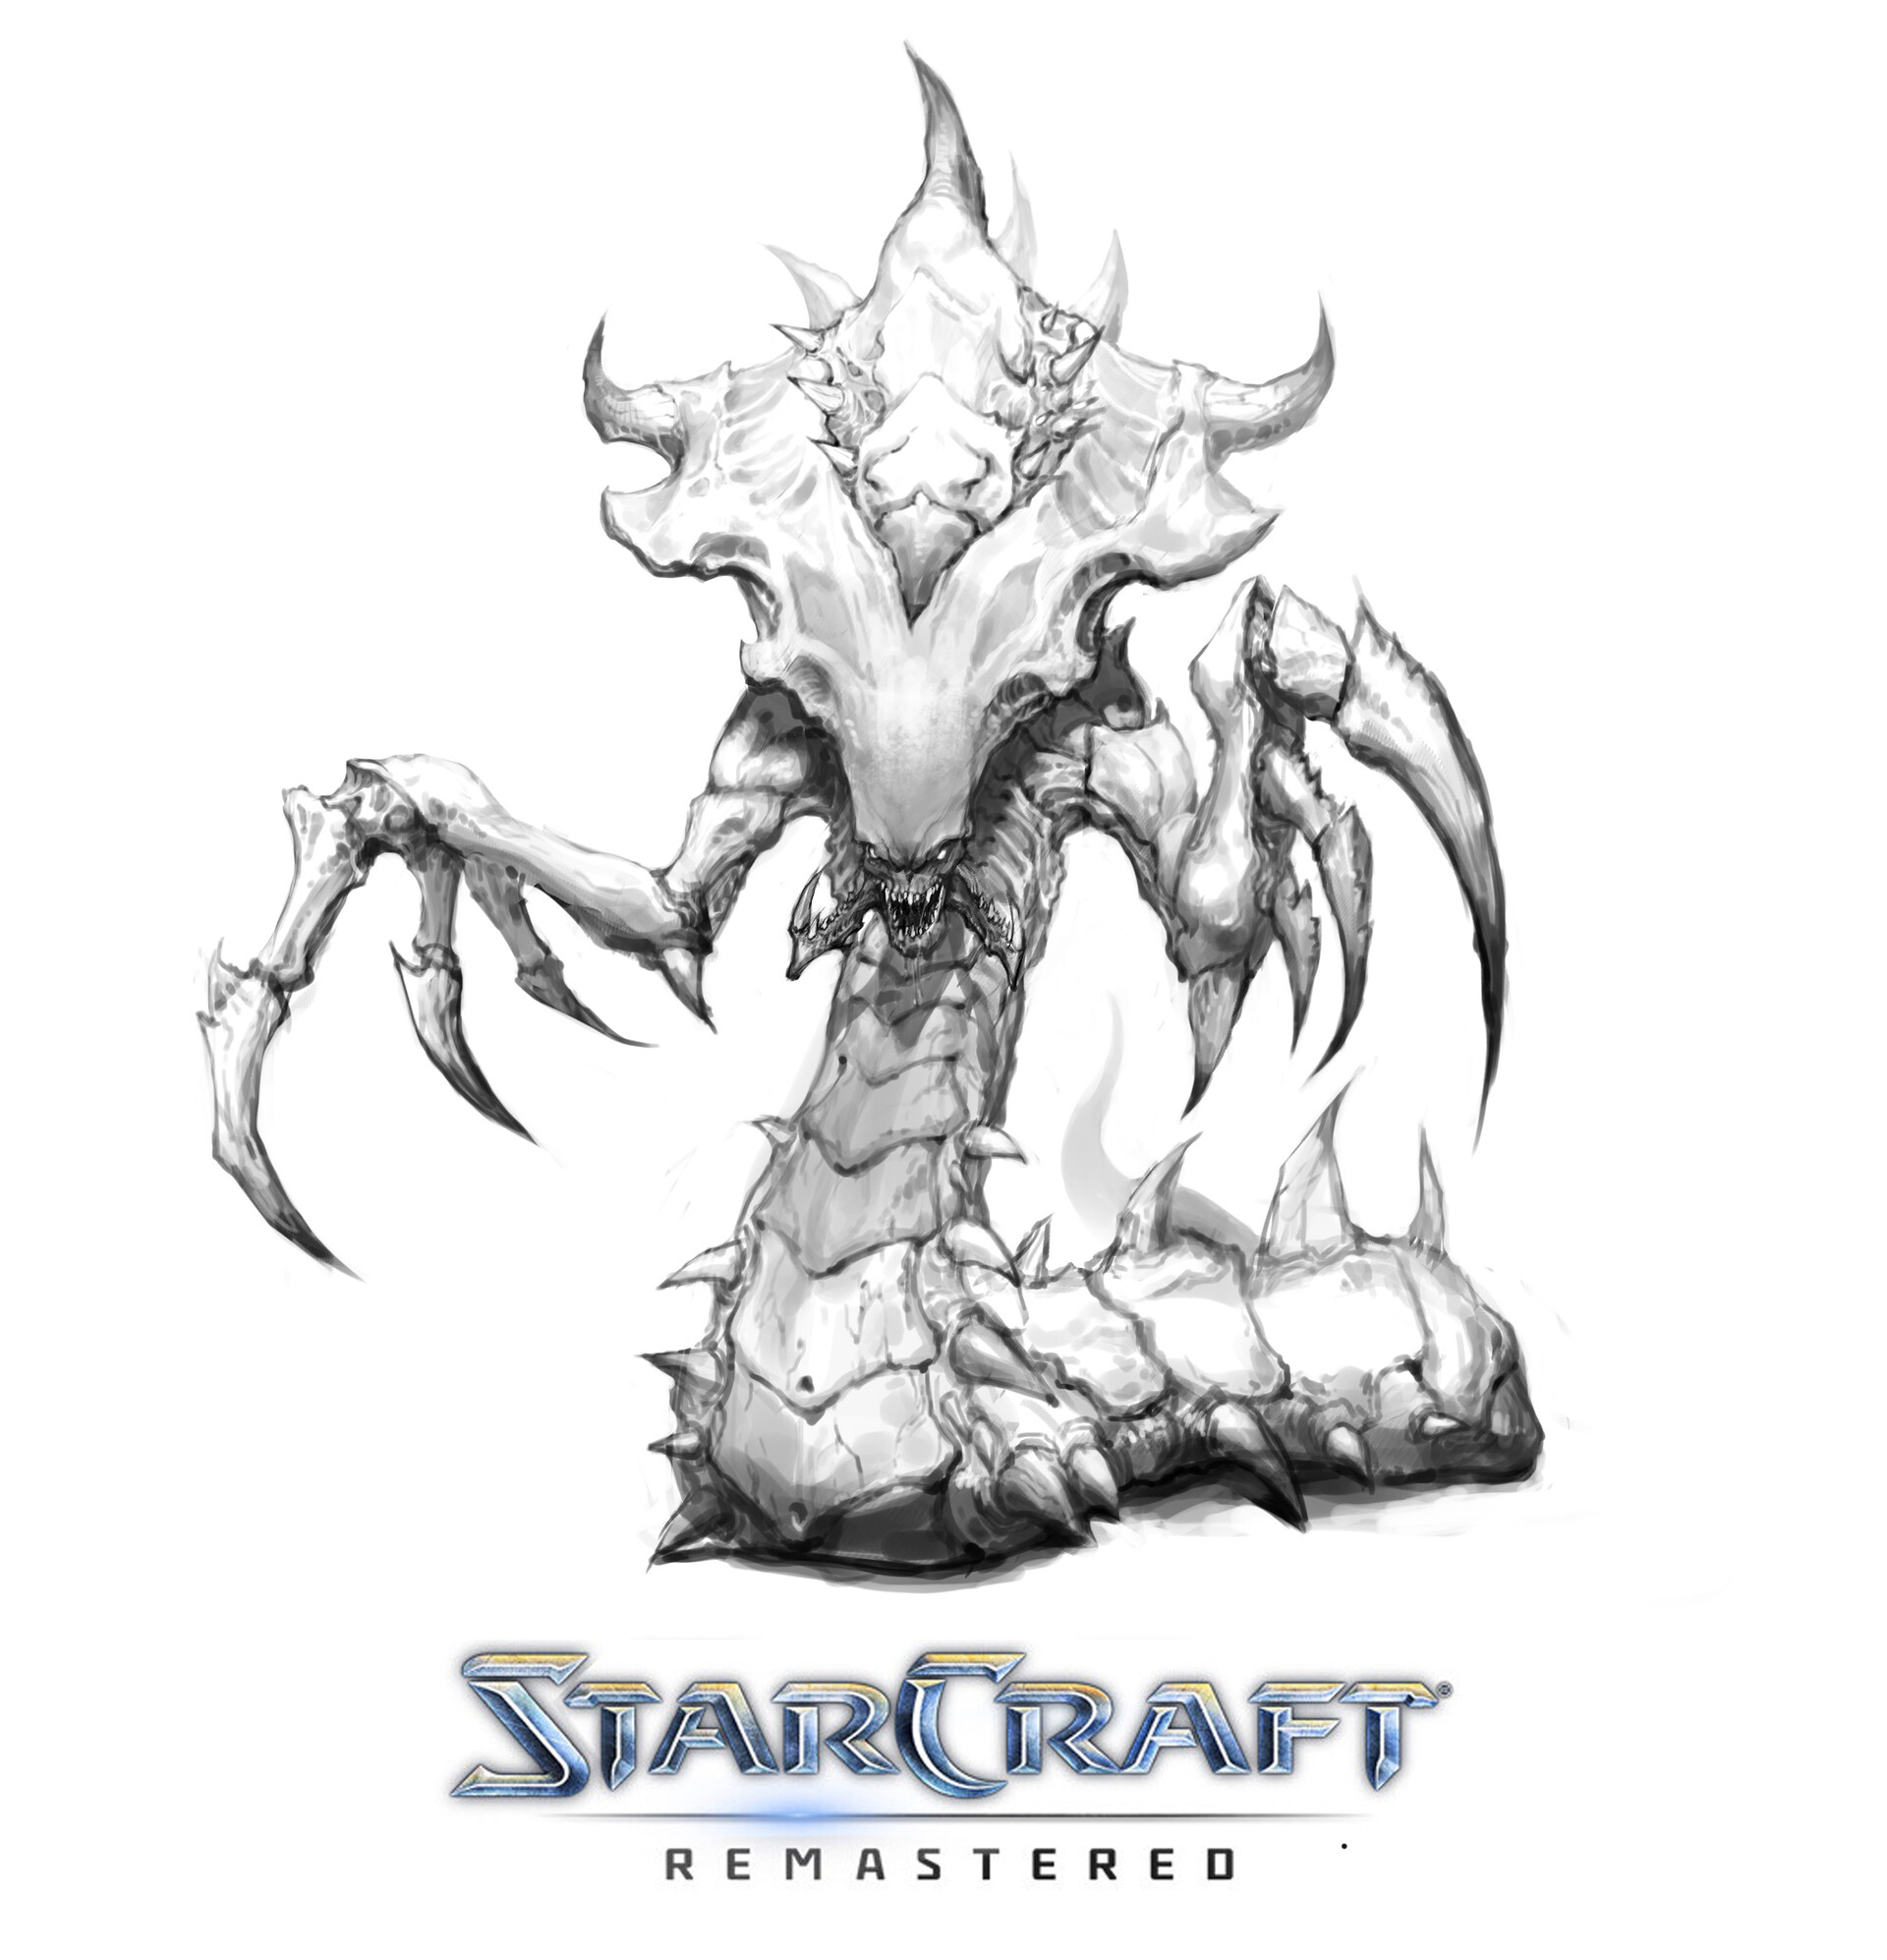 Drawing StarCraft II art work by Tolea Moruz | OurArtCorner